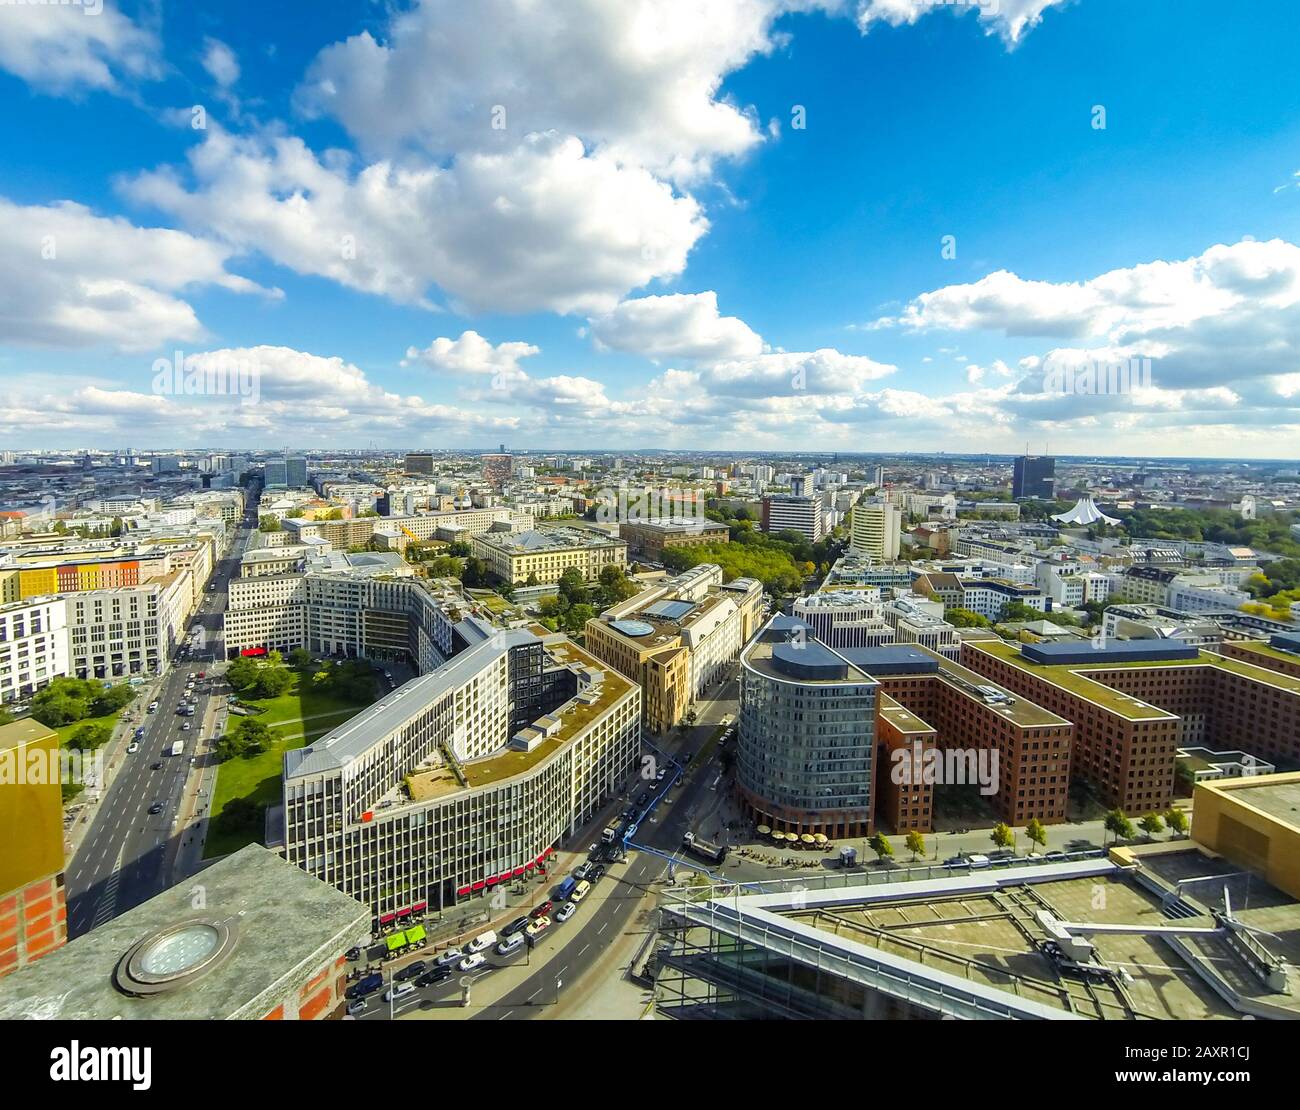 Vista panoramica dei droni aerei sulla città di Berlino, Germania. Vista dello skyline del centro di Berlino dal grattacielo di Potsdamer Platz Foto Stock